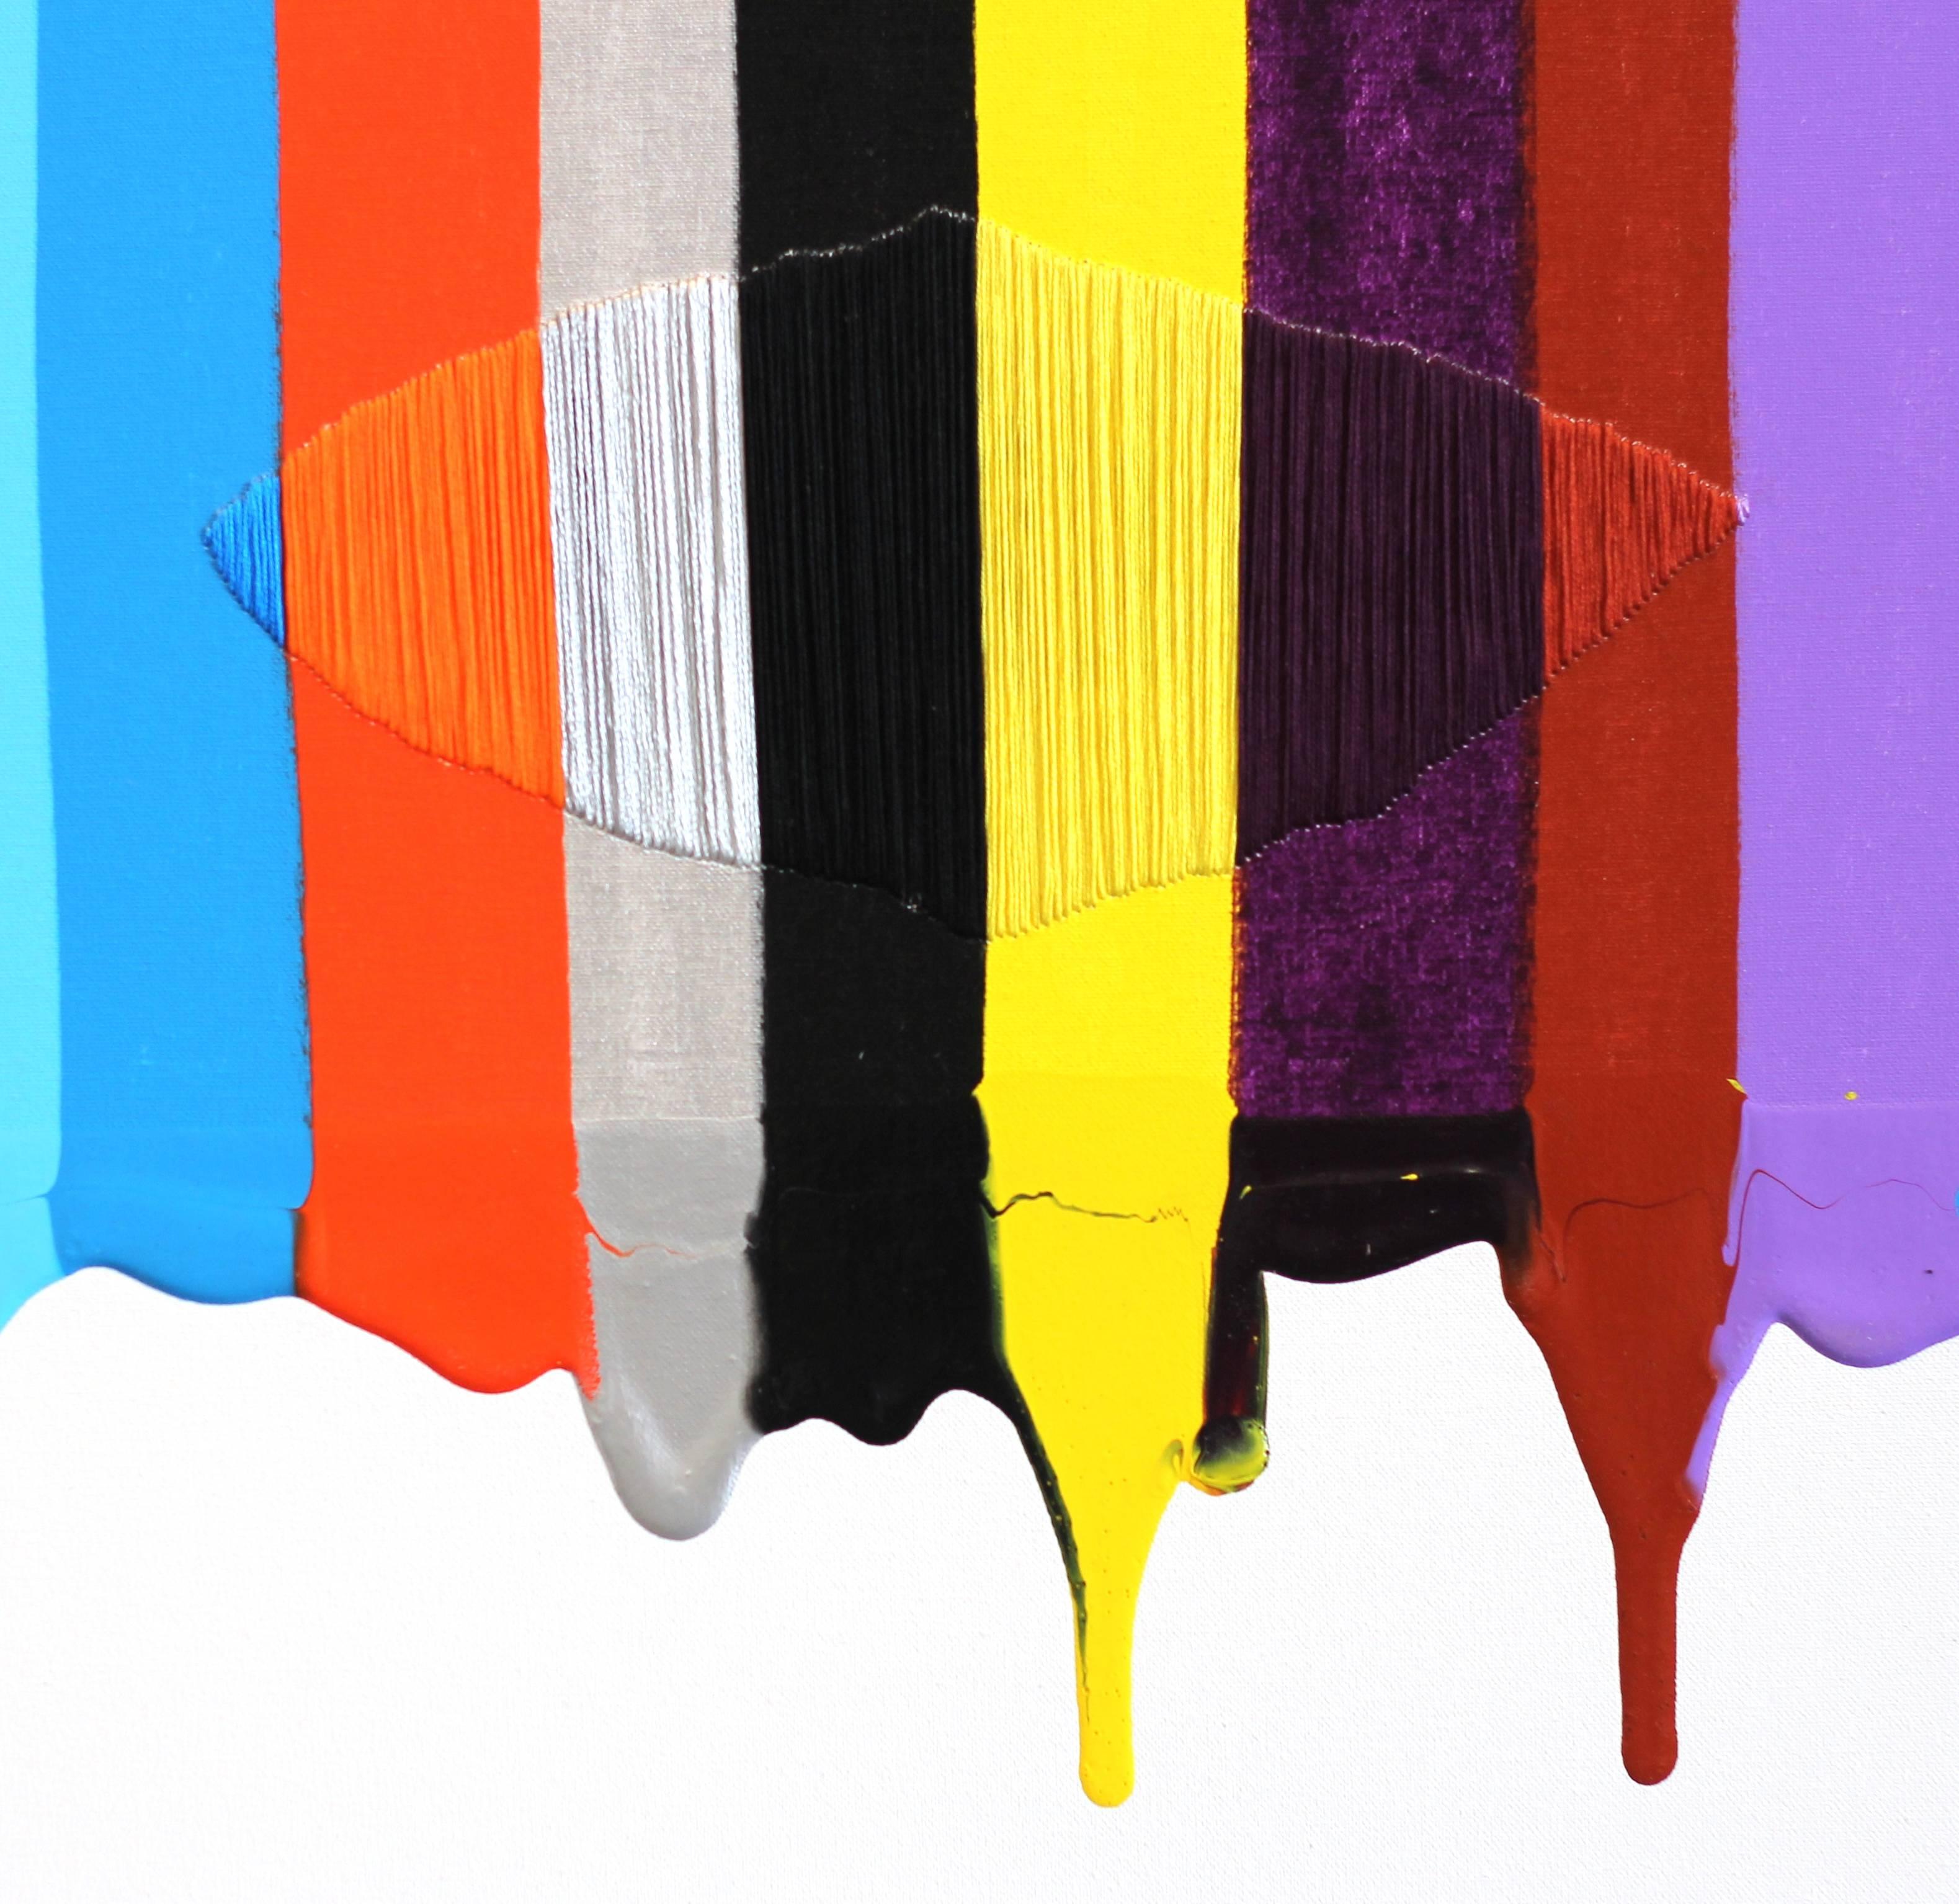 Fils I Colors CCLXIX - Contemporary Painting by Raul de la Torre